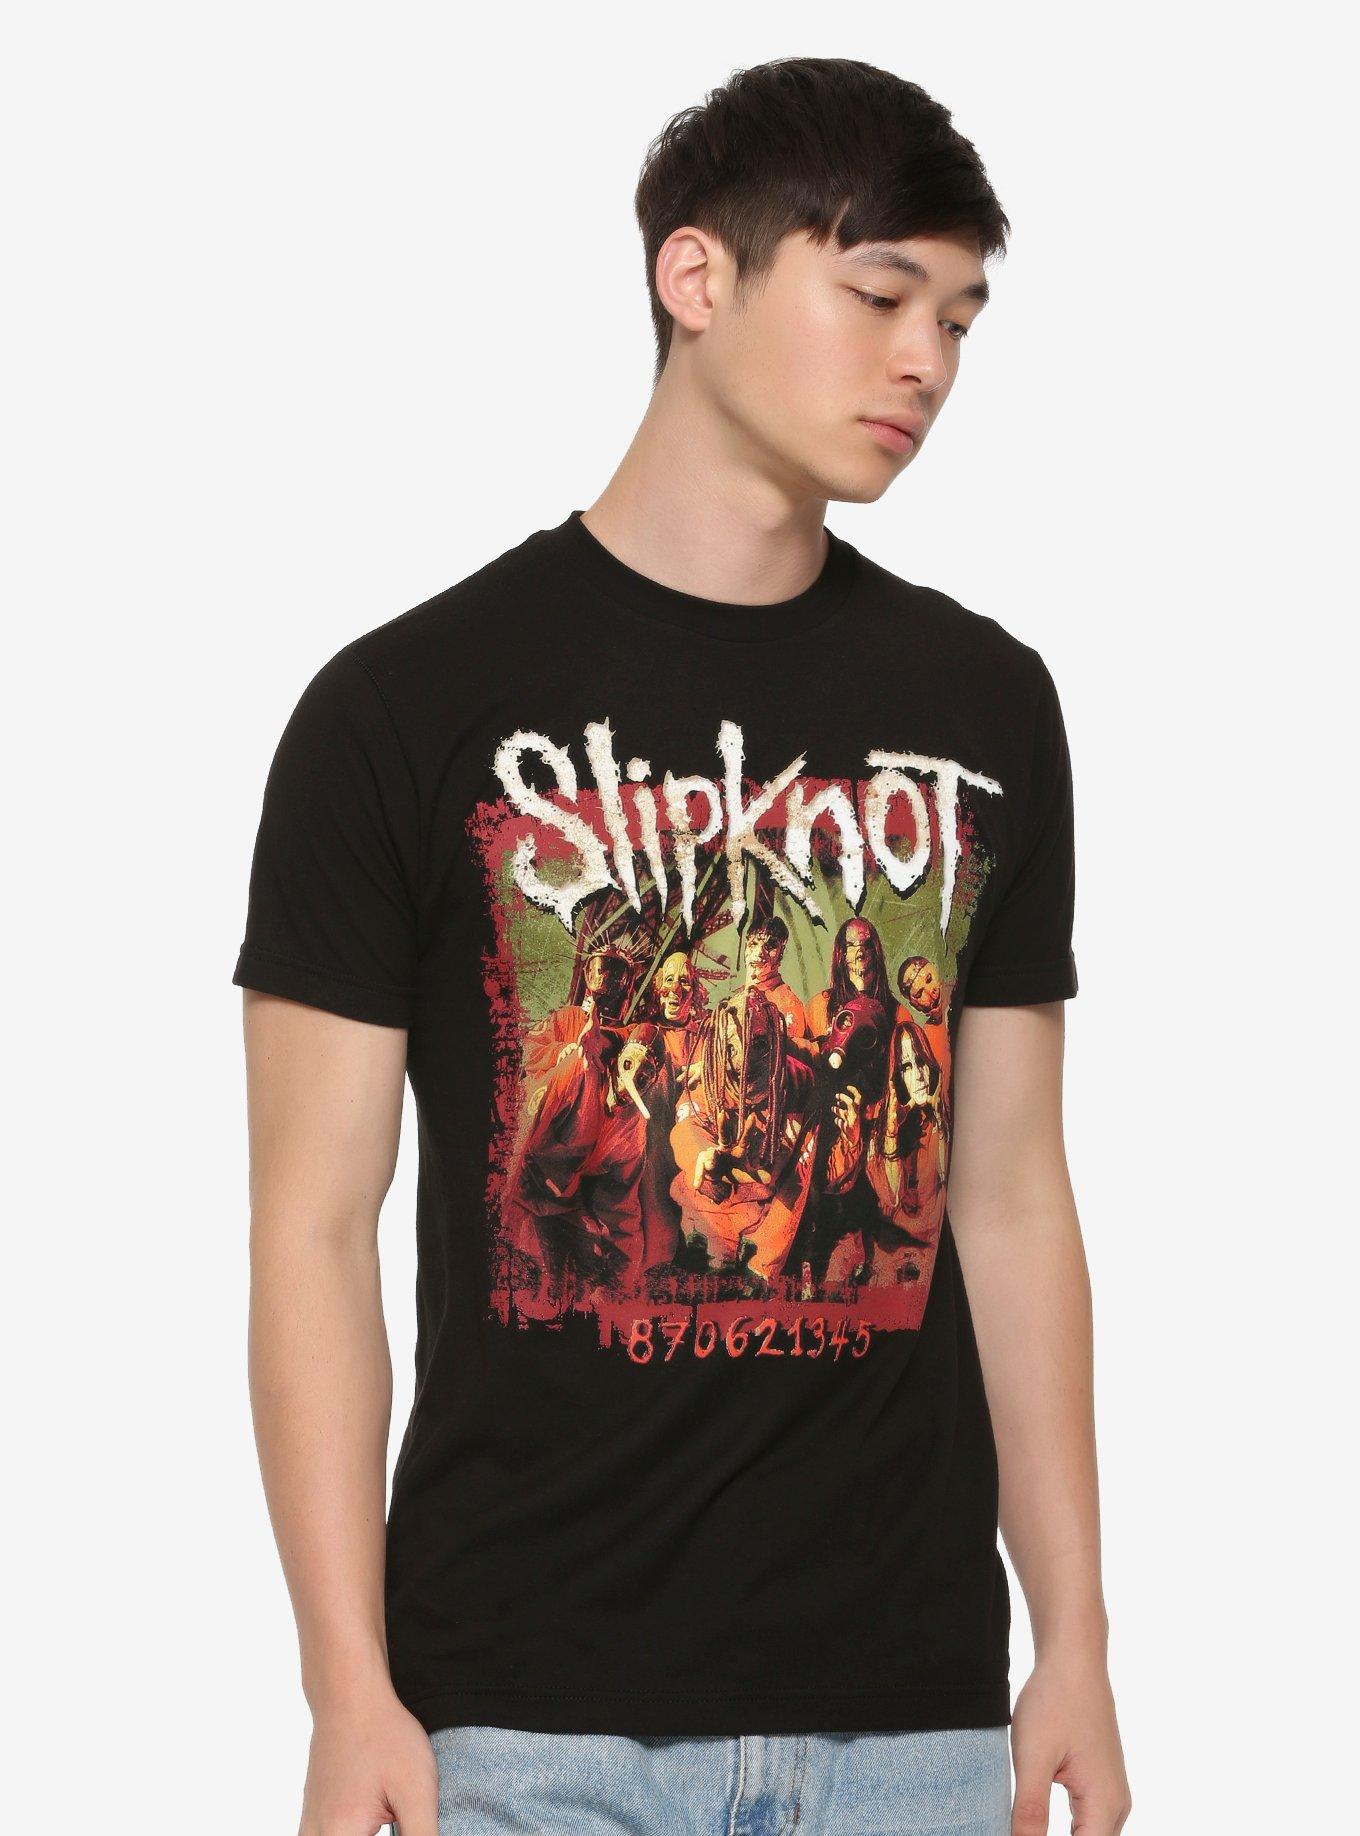 Slipknot 870621345 T-Shirt, BLACK, alternate